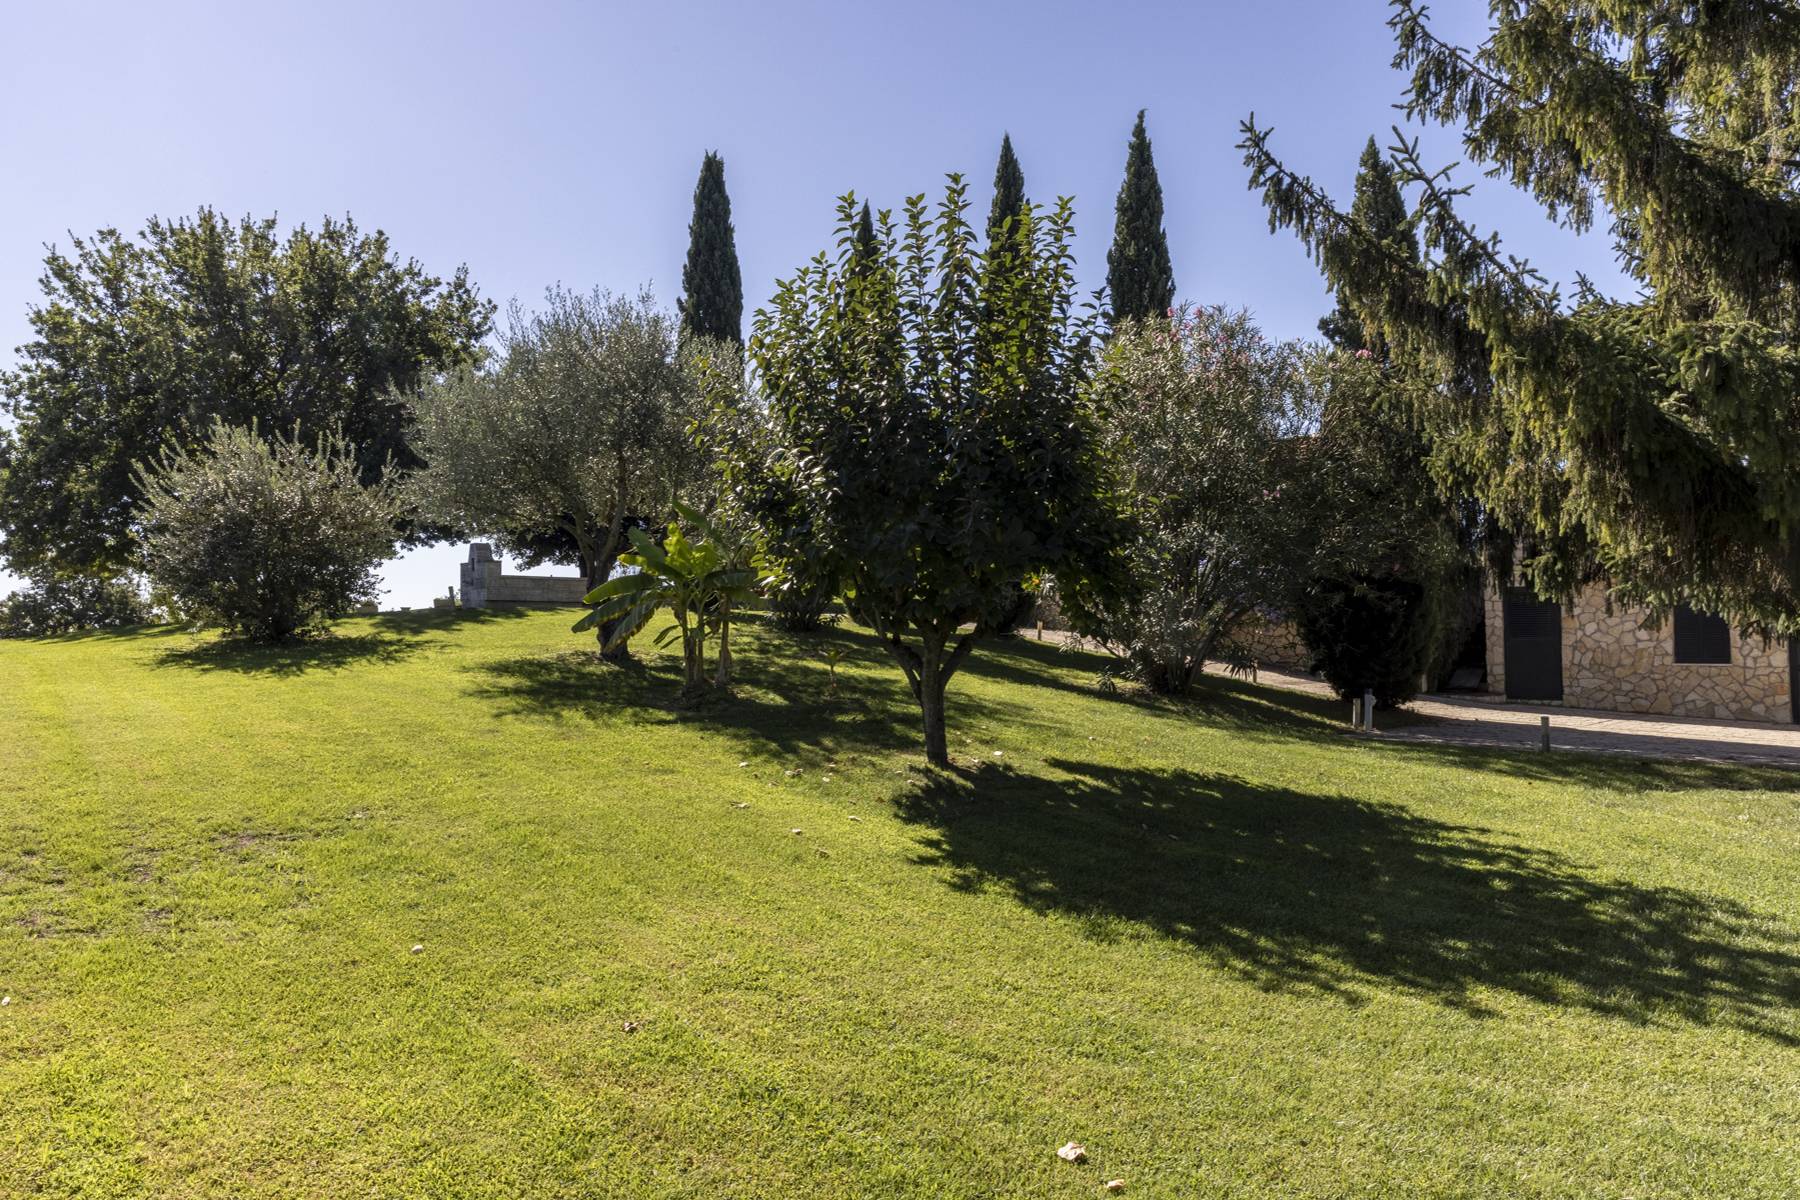 Villa in Vendita a Riano: 5 locali, 500 mq - Foto 16